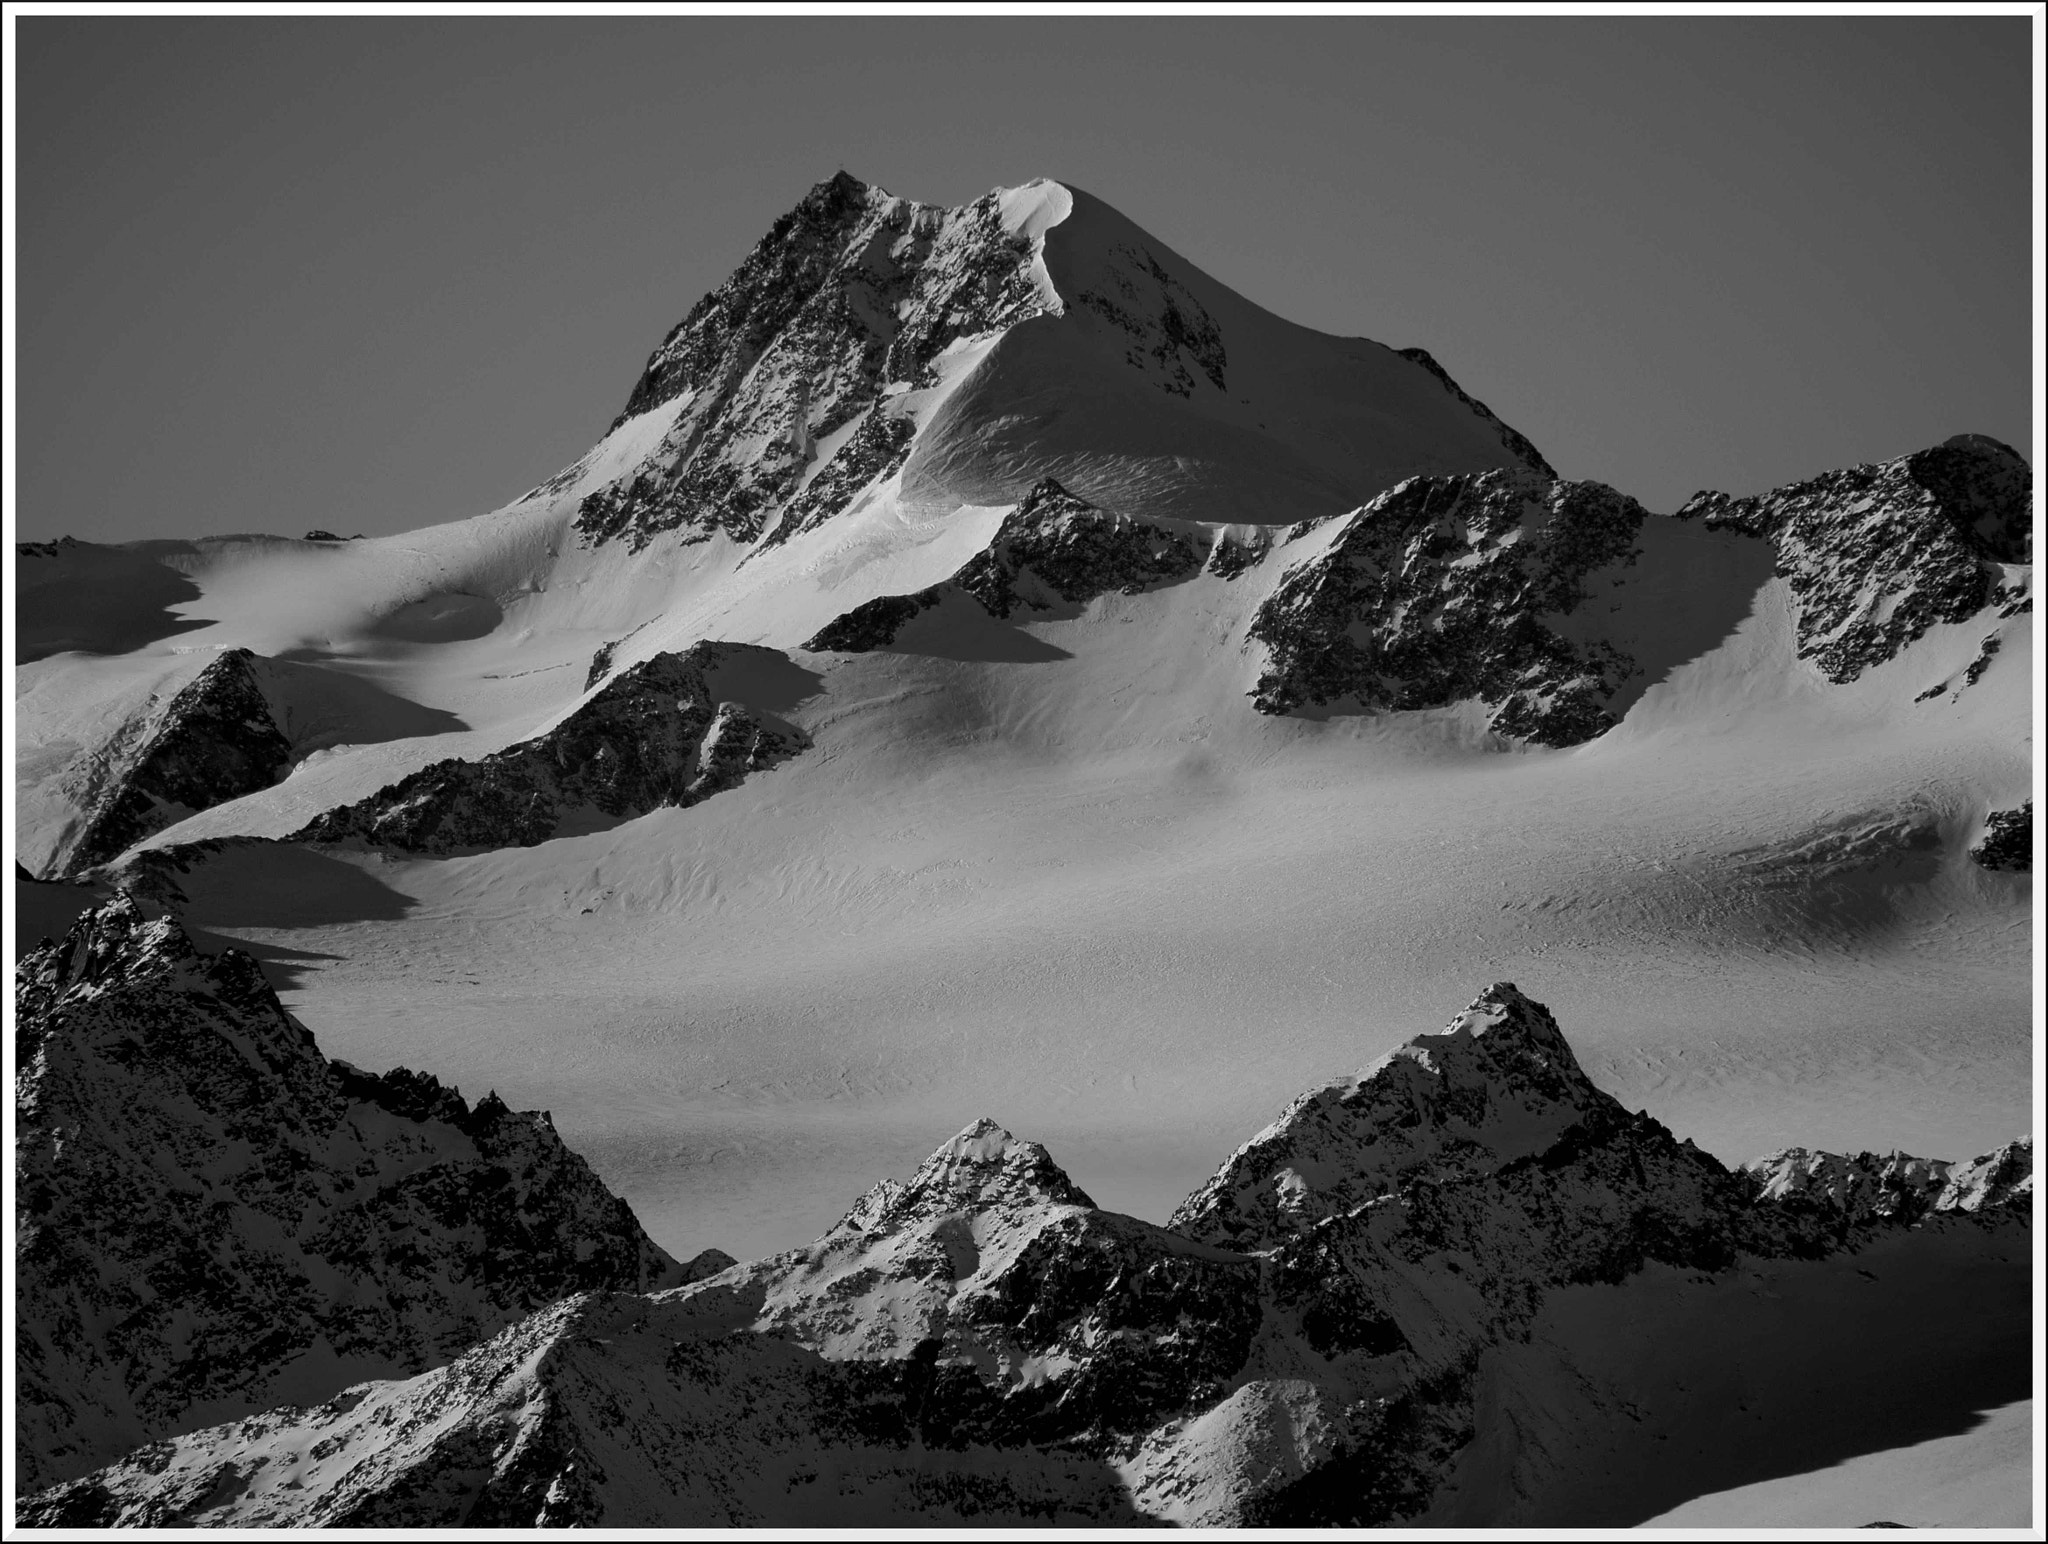 Olympus OM-D E-M1 sample photo. Wildspitze (3.768m), Ötztaler alpen, austria photography